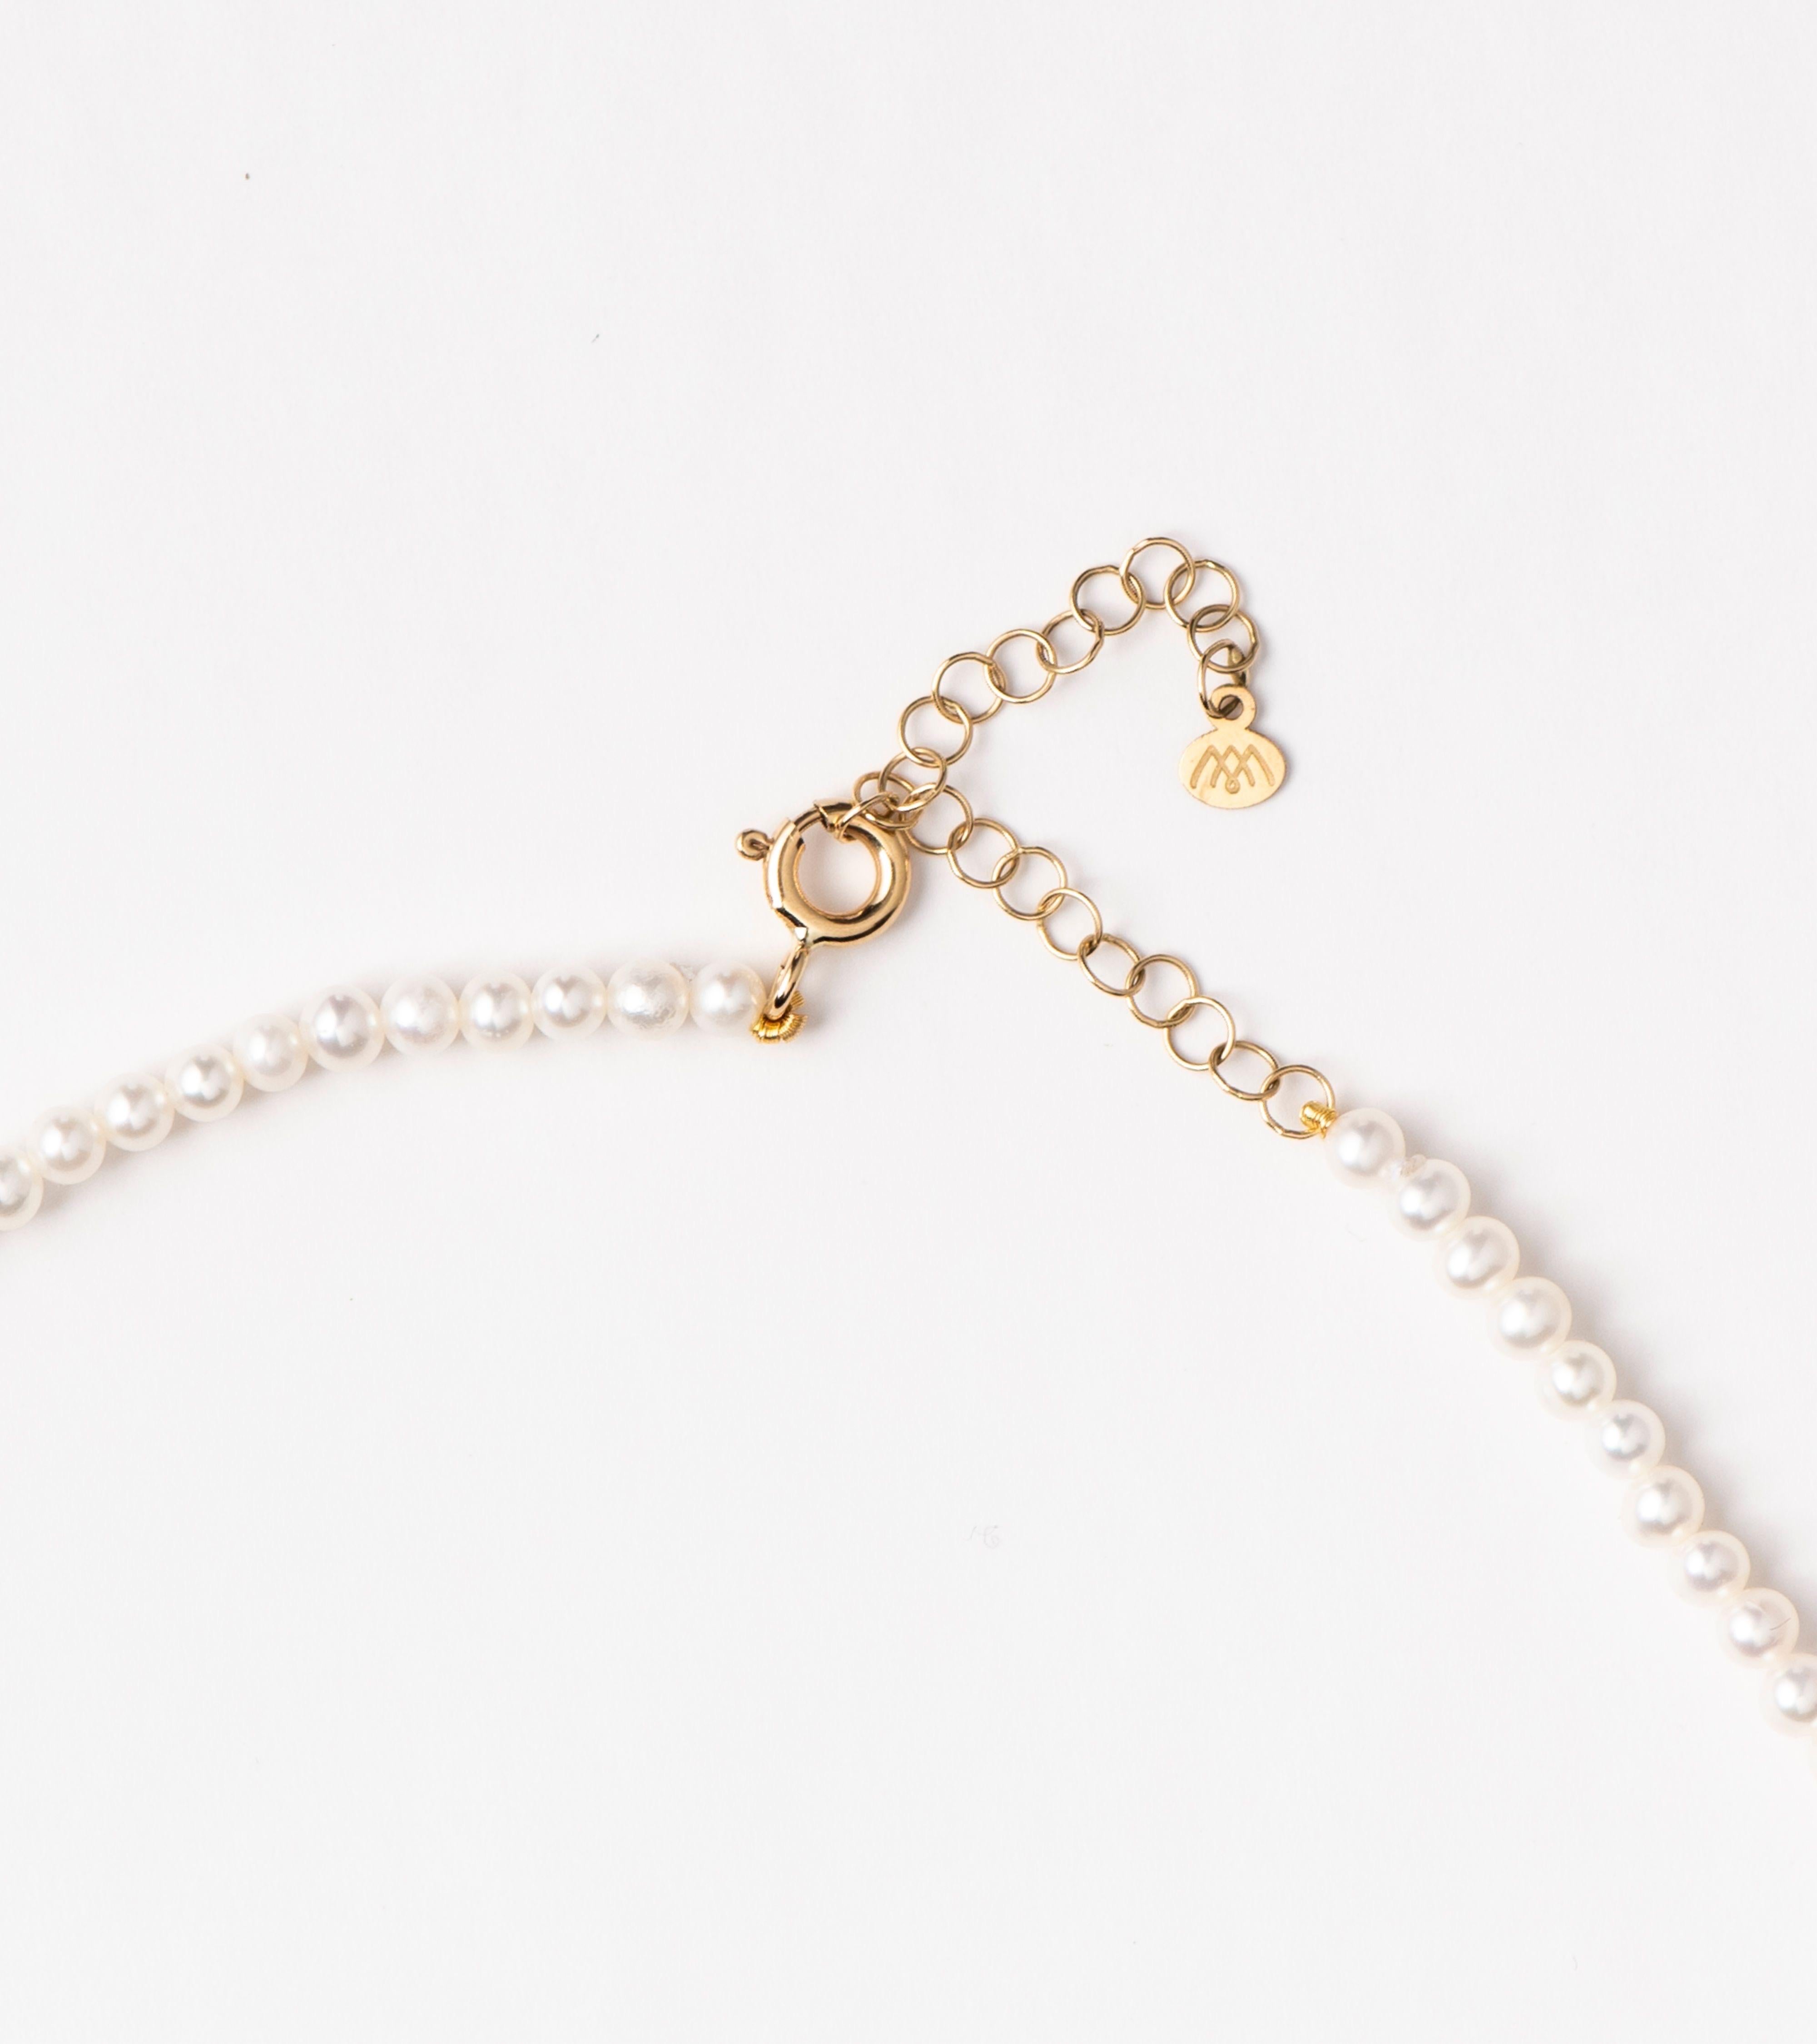 Unsere Halskette mit Barock-Charme an Mini-Perlen zeichnet sich durch eine barocke, tropfenförmige Perle aus, die an einem Strang mit Mini-Süßwasserperlen aufgehängt ist und von schimmernden Diamanten an ihrem Haken akzentuiert wird. Die zeitlose